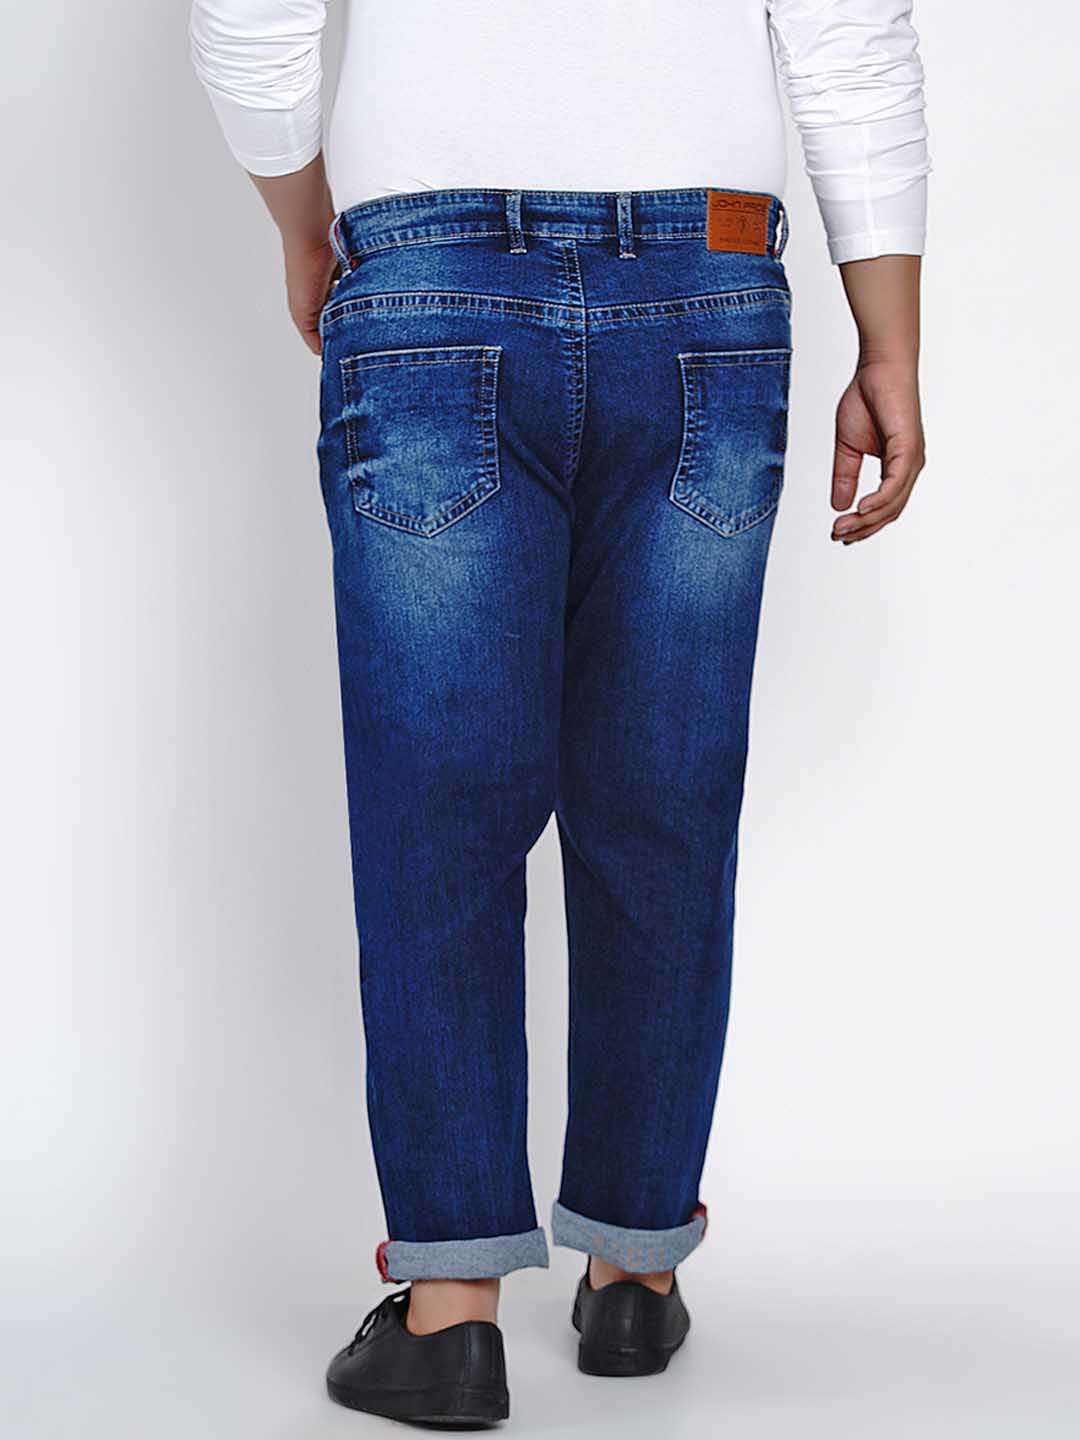 affordables/jeans/JPJ2514/jpj2514-5.jpg